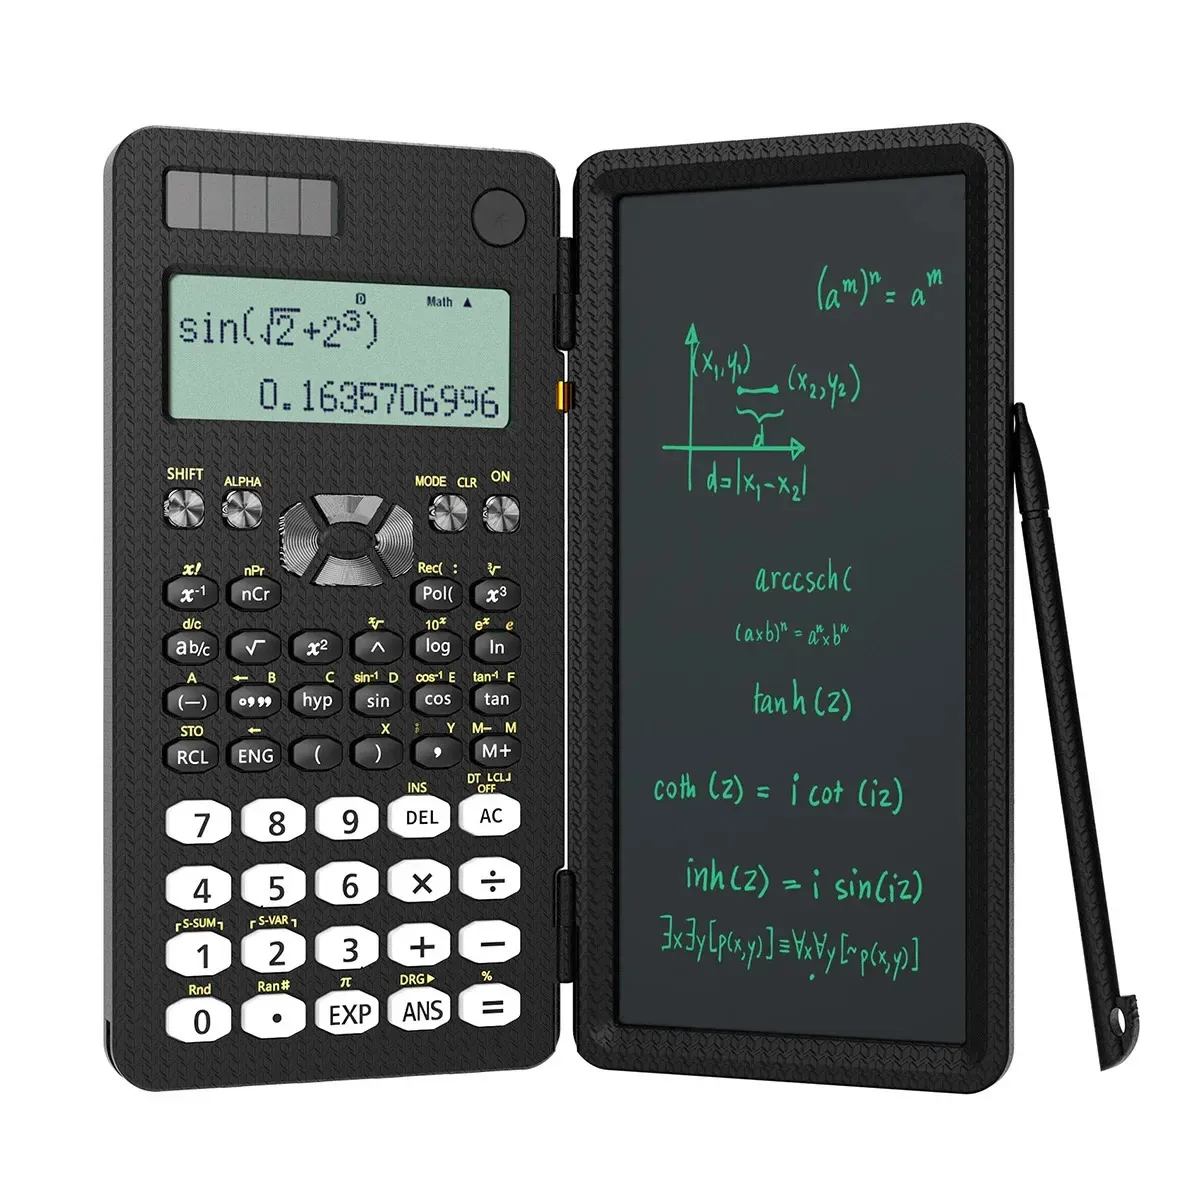 SÌ Mini calcolatrice scientifica con tavoletta calcolatrici Blocco note Memo Elettronica per ufficio Materiale scolastico 991es Ms 82ms 240227